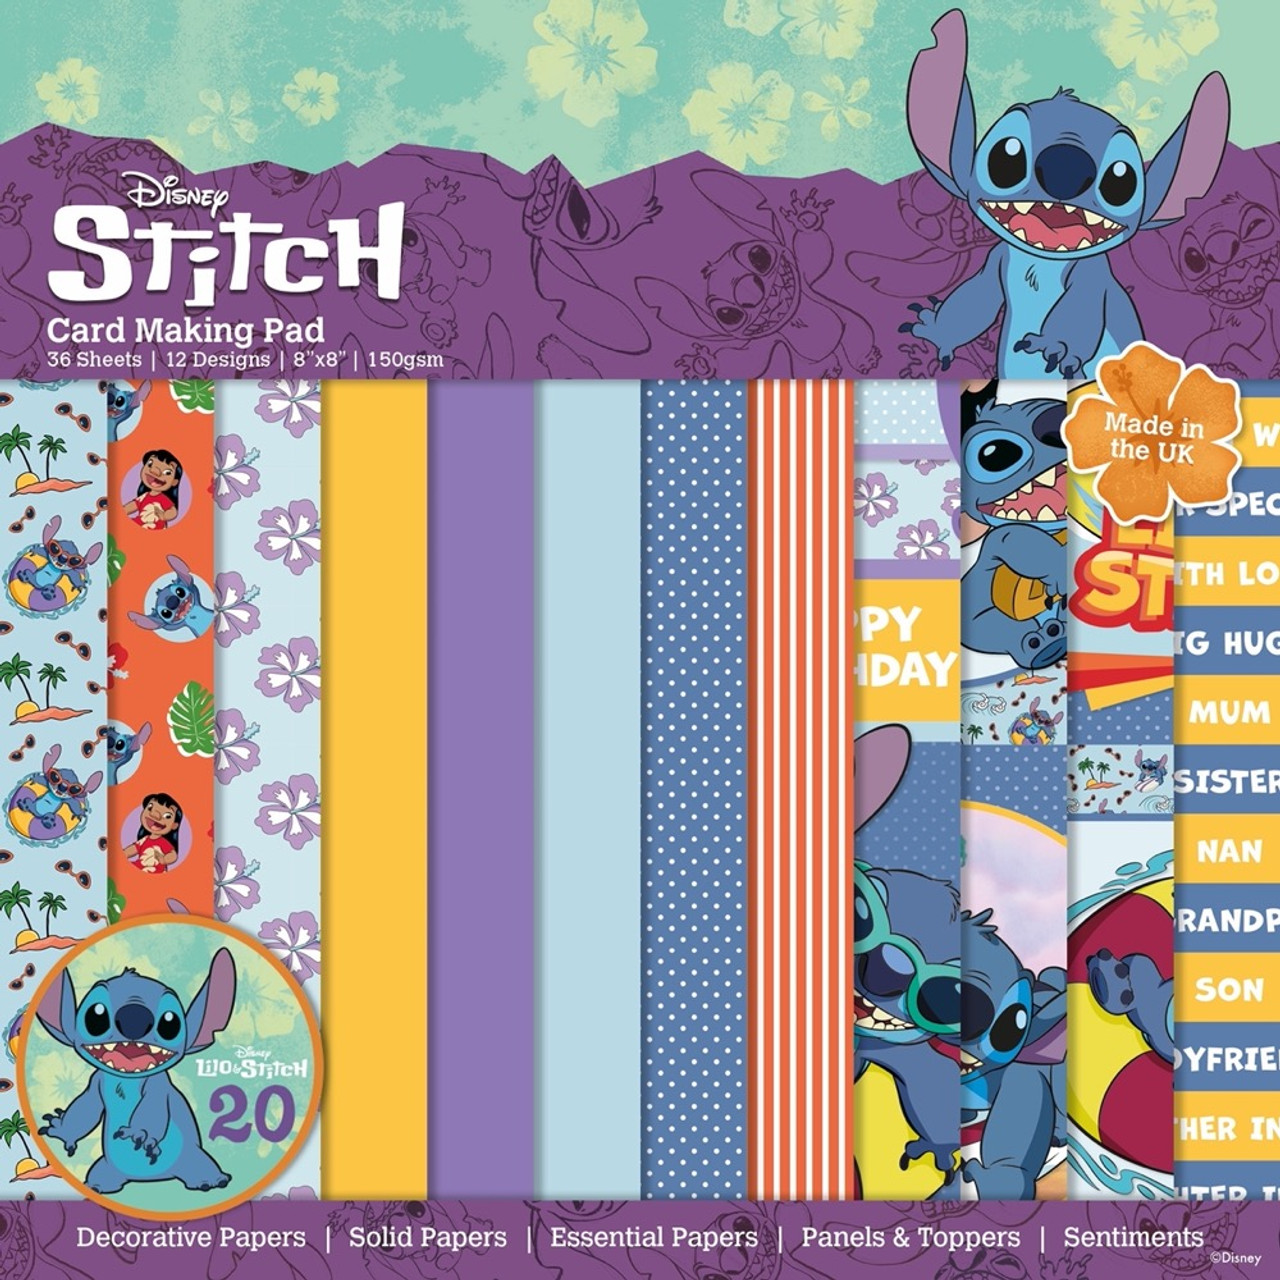 Lilo & Stitch Cutouts, Lilo, Stitch, Lilo Stitch Yard Signs, Lilo